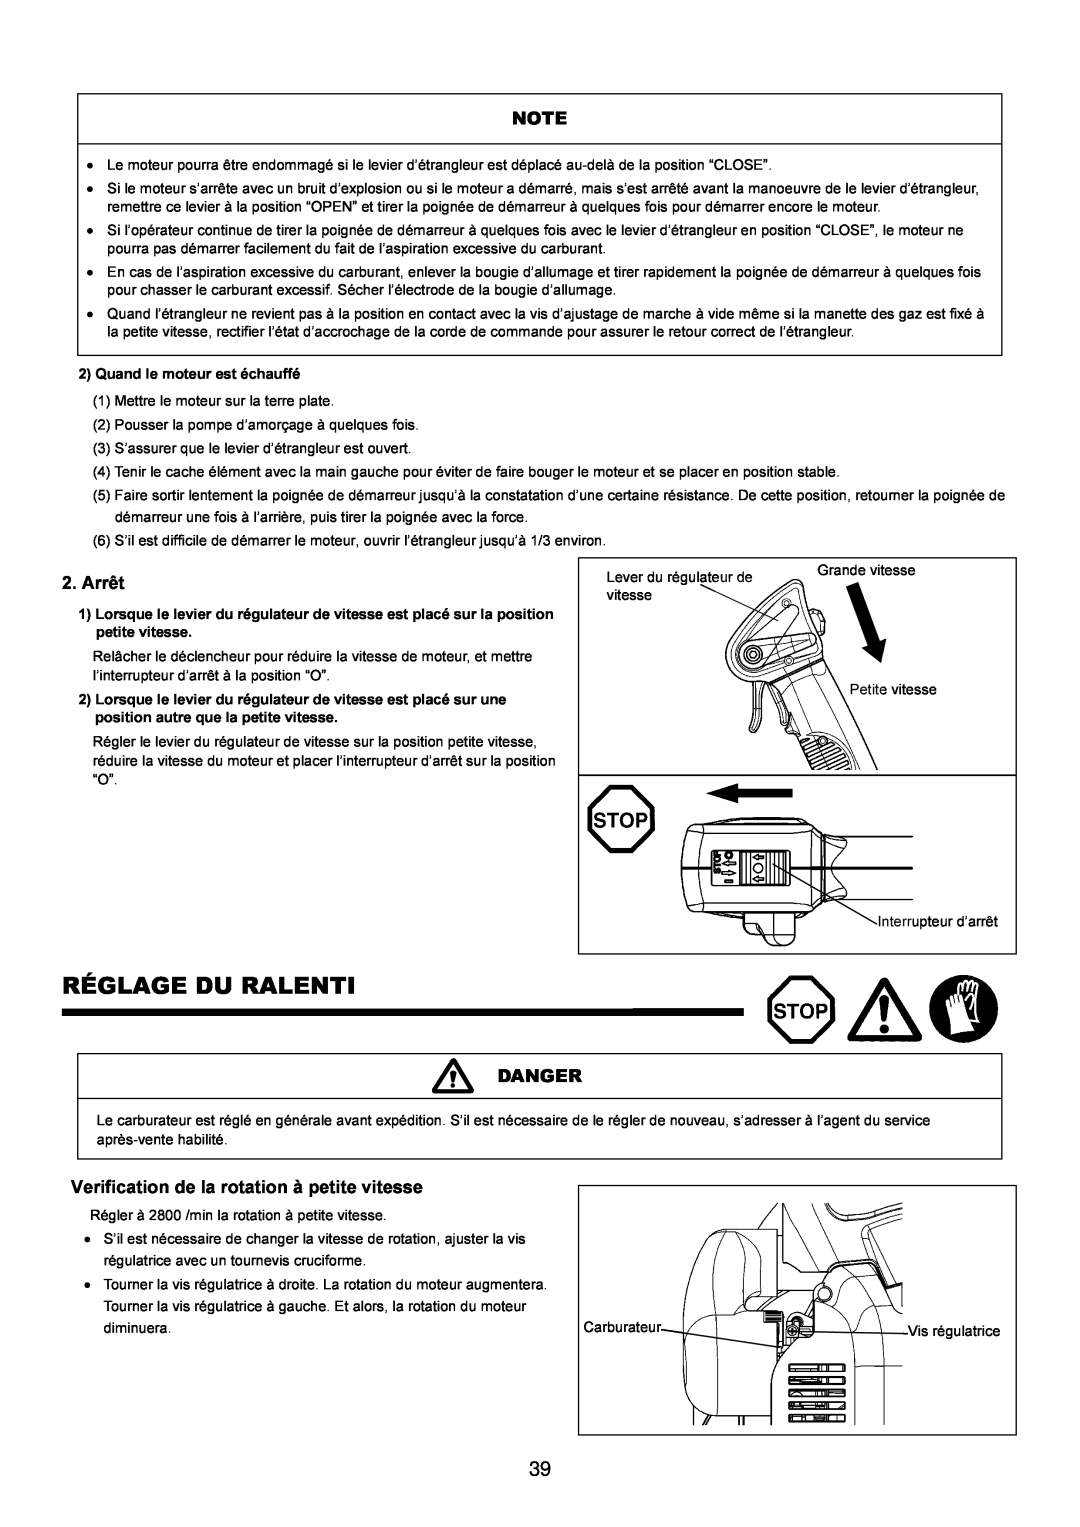 Makita BBX7600CA instruction manual Réglage Du Ralenti, Arrêt, Danger, Verification de la rotation à petite vitesse 